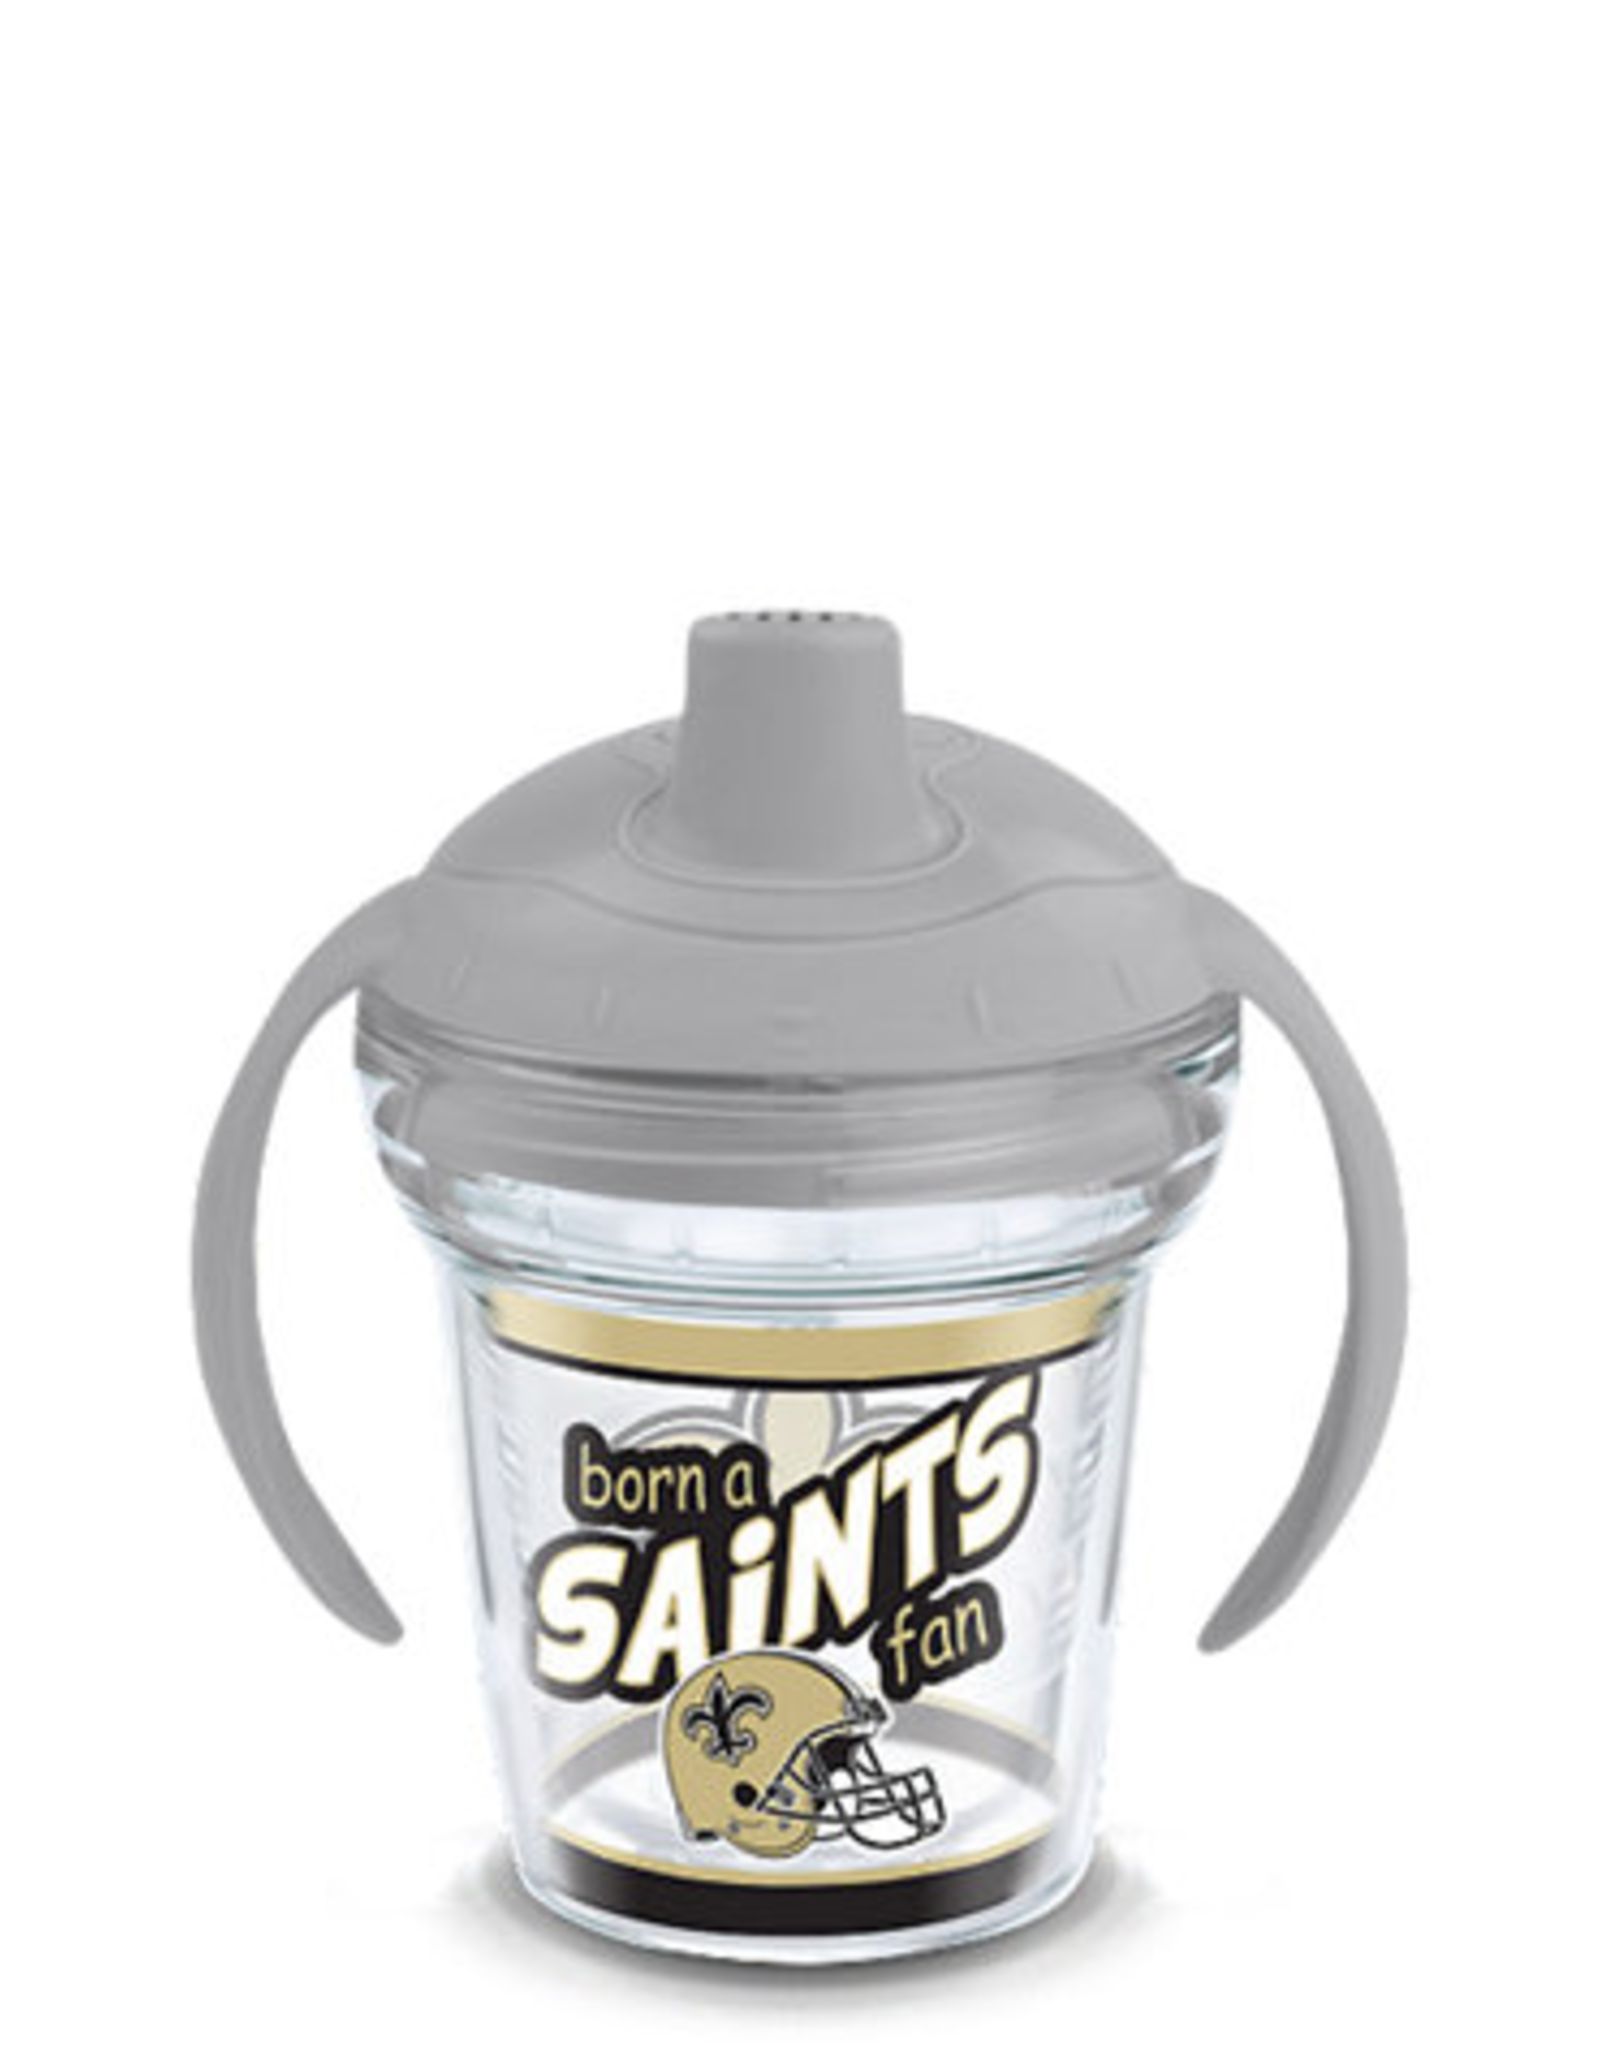 Saints Tervis Sippy Cup - BORN A FAN